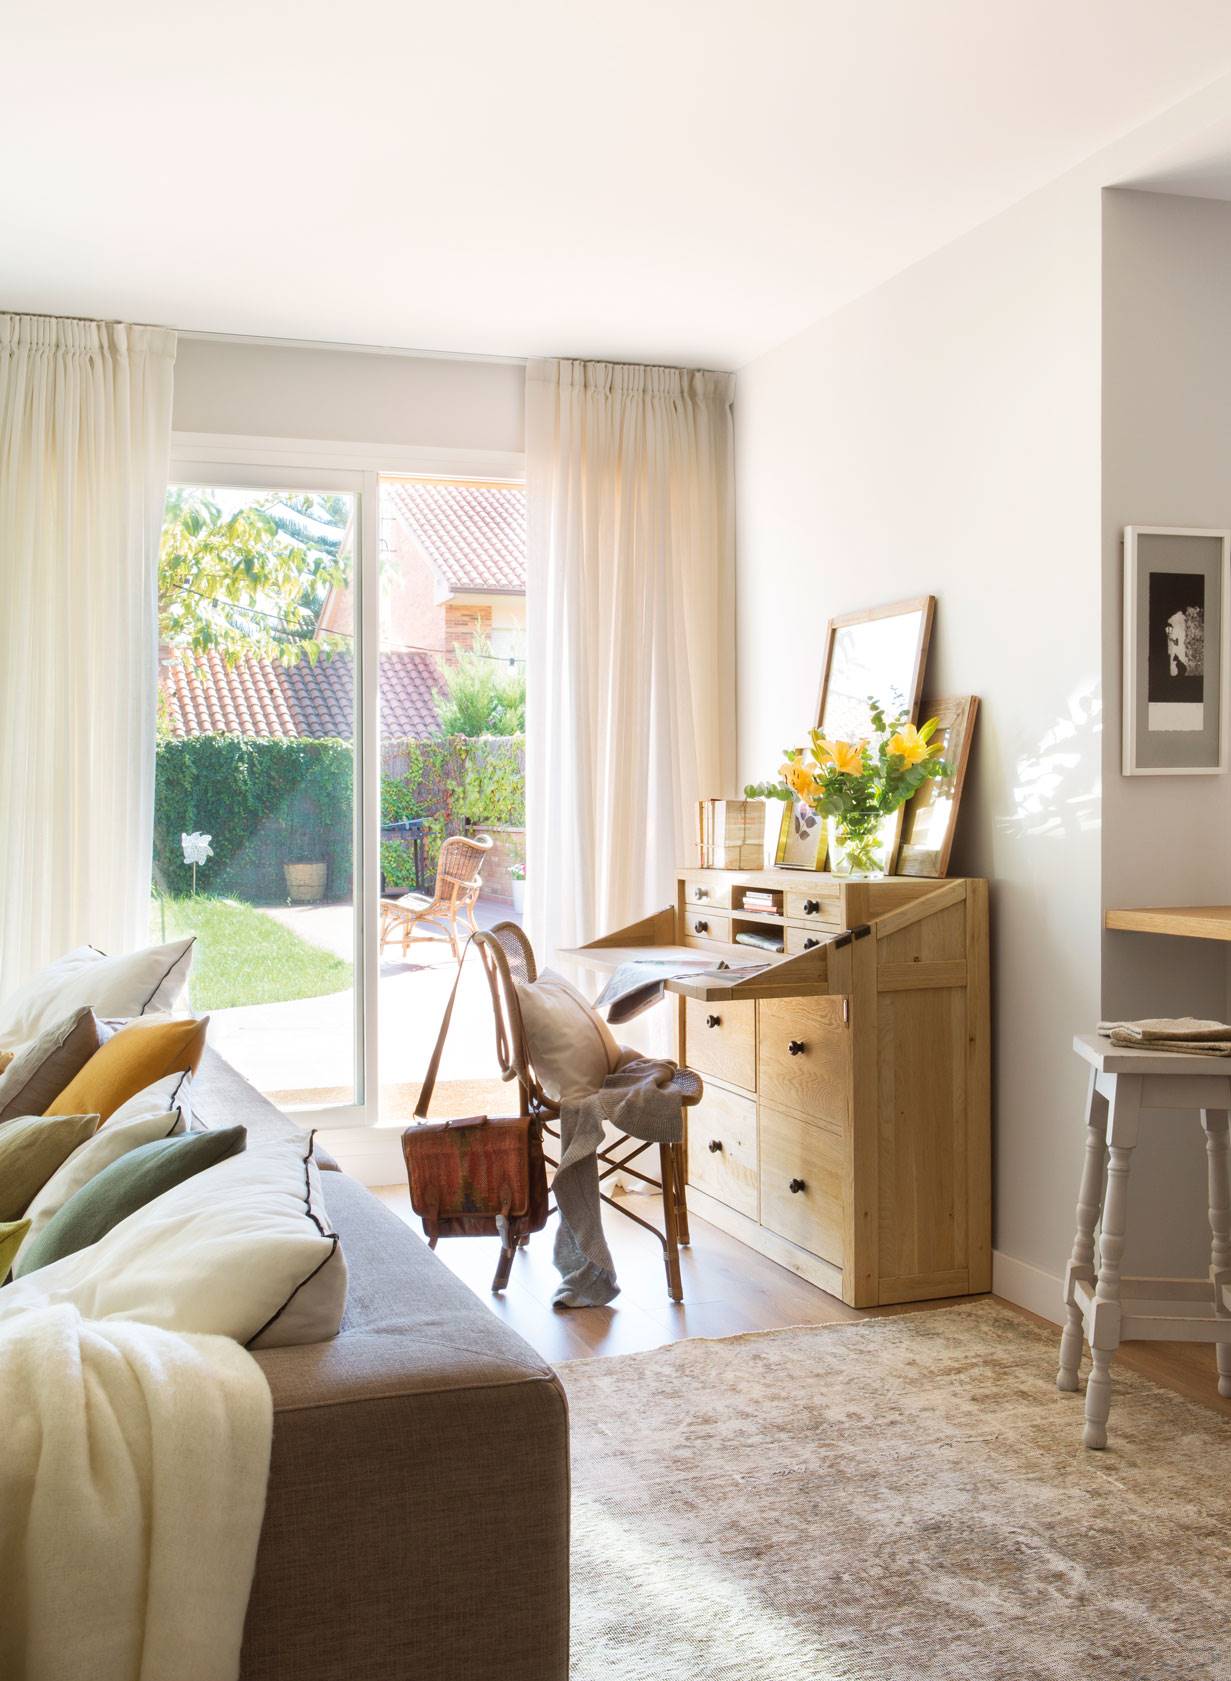 Rincon de salon con secreter y silla a modo de zona de trabajo, con alfombra, cuadrod, flores y ventana con cortinas-469259